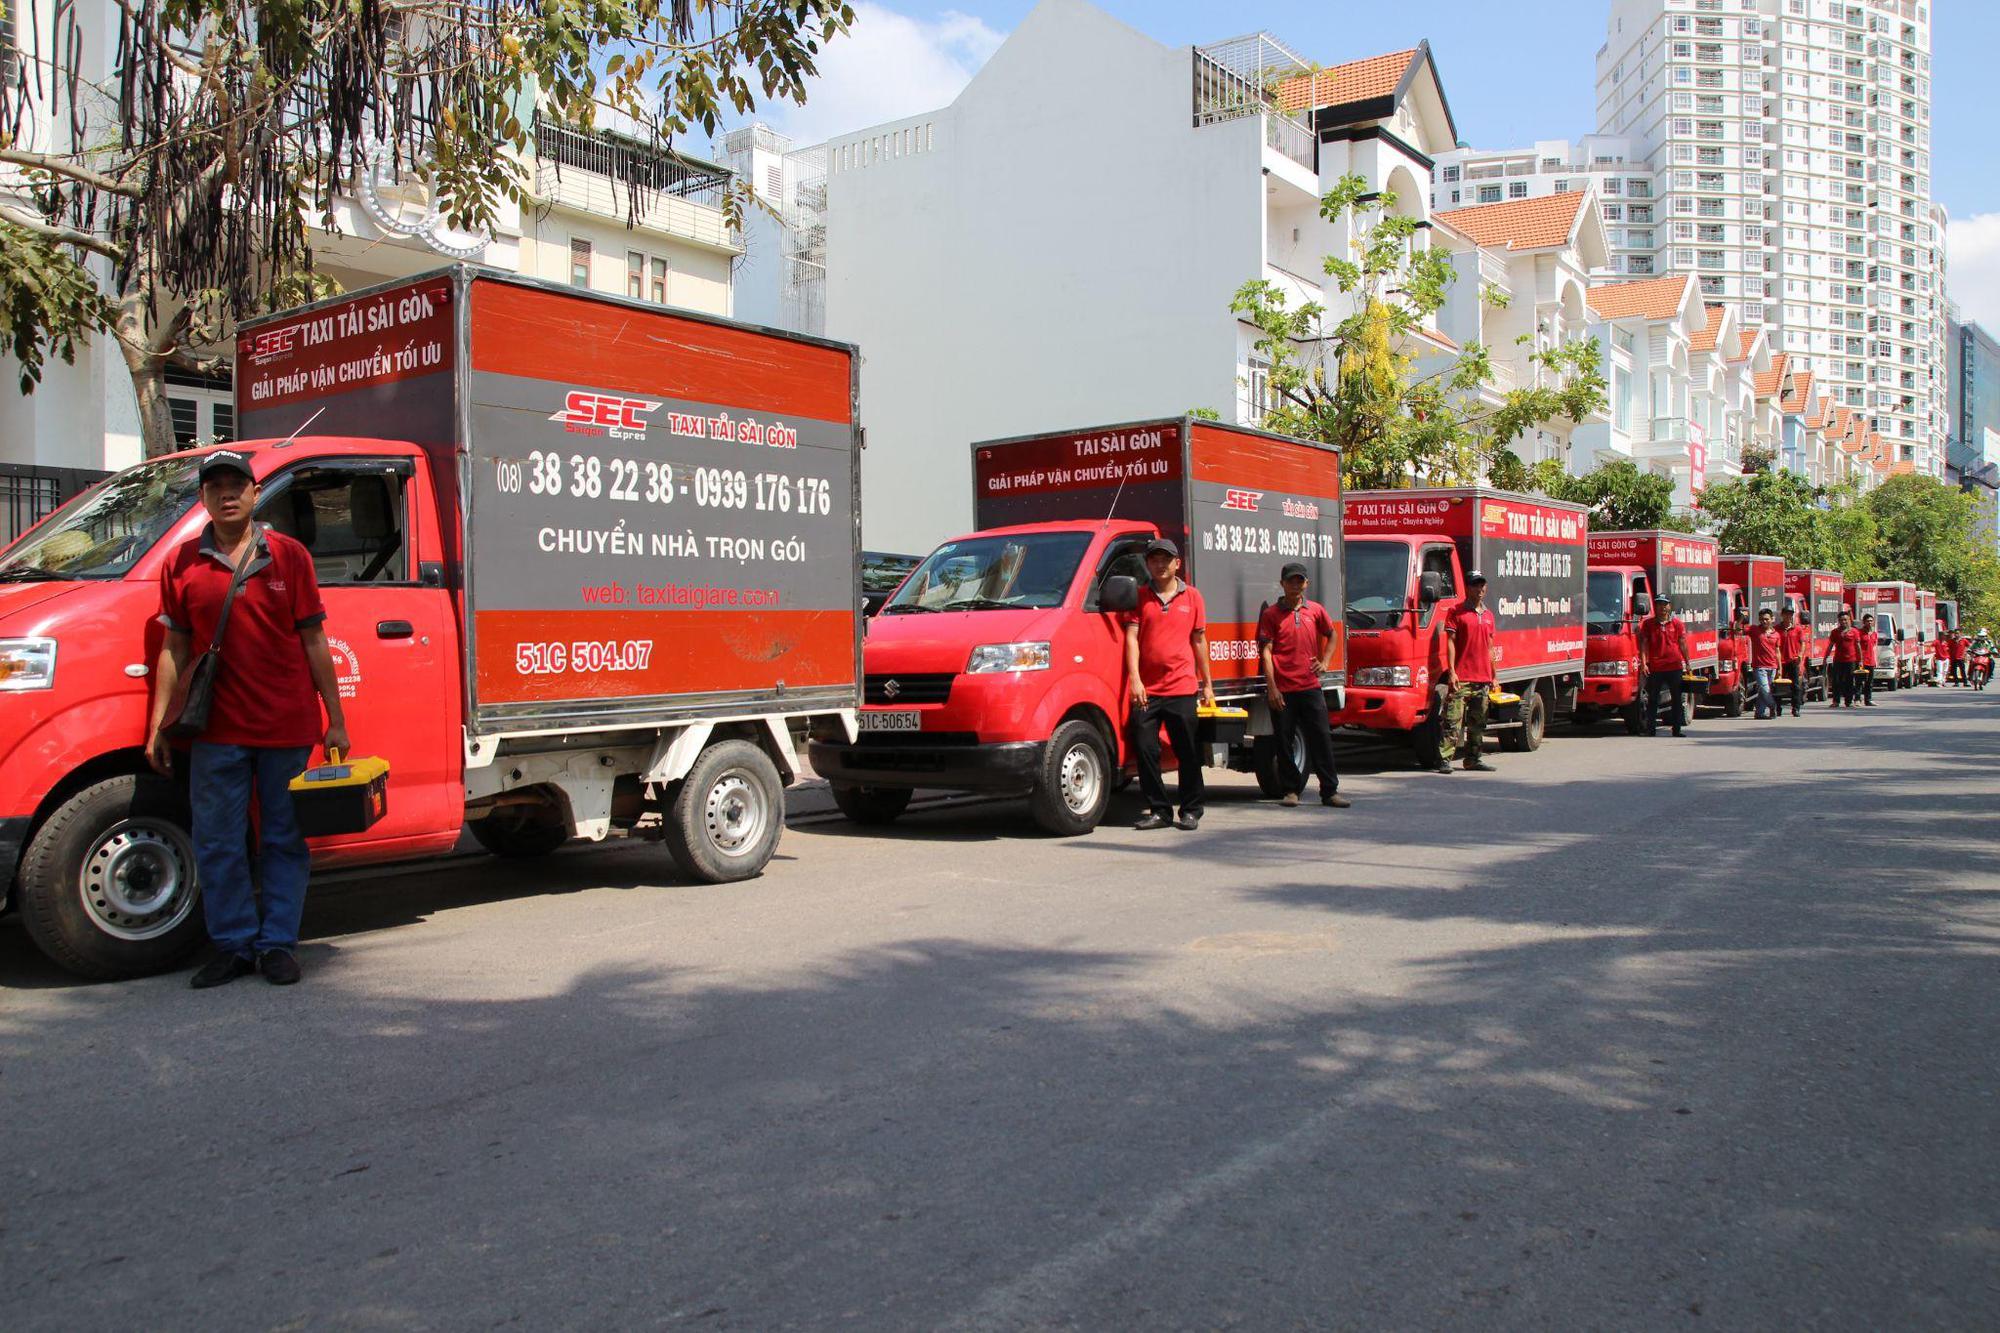 Saigon Express - Dịch vụ chuyển văn phòng trọn gói chuyên nghiệp tại TP.HCM - Ảnh 1.